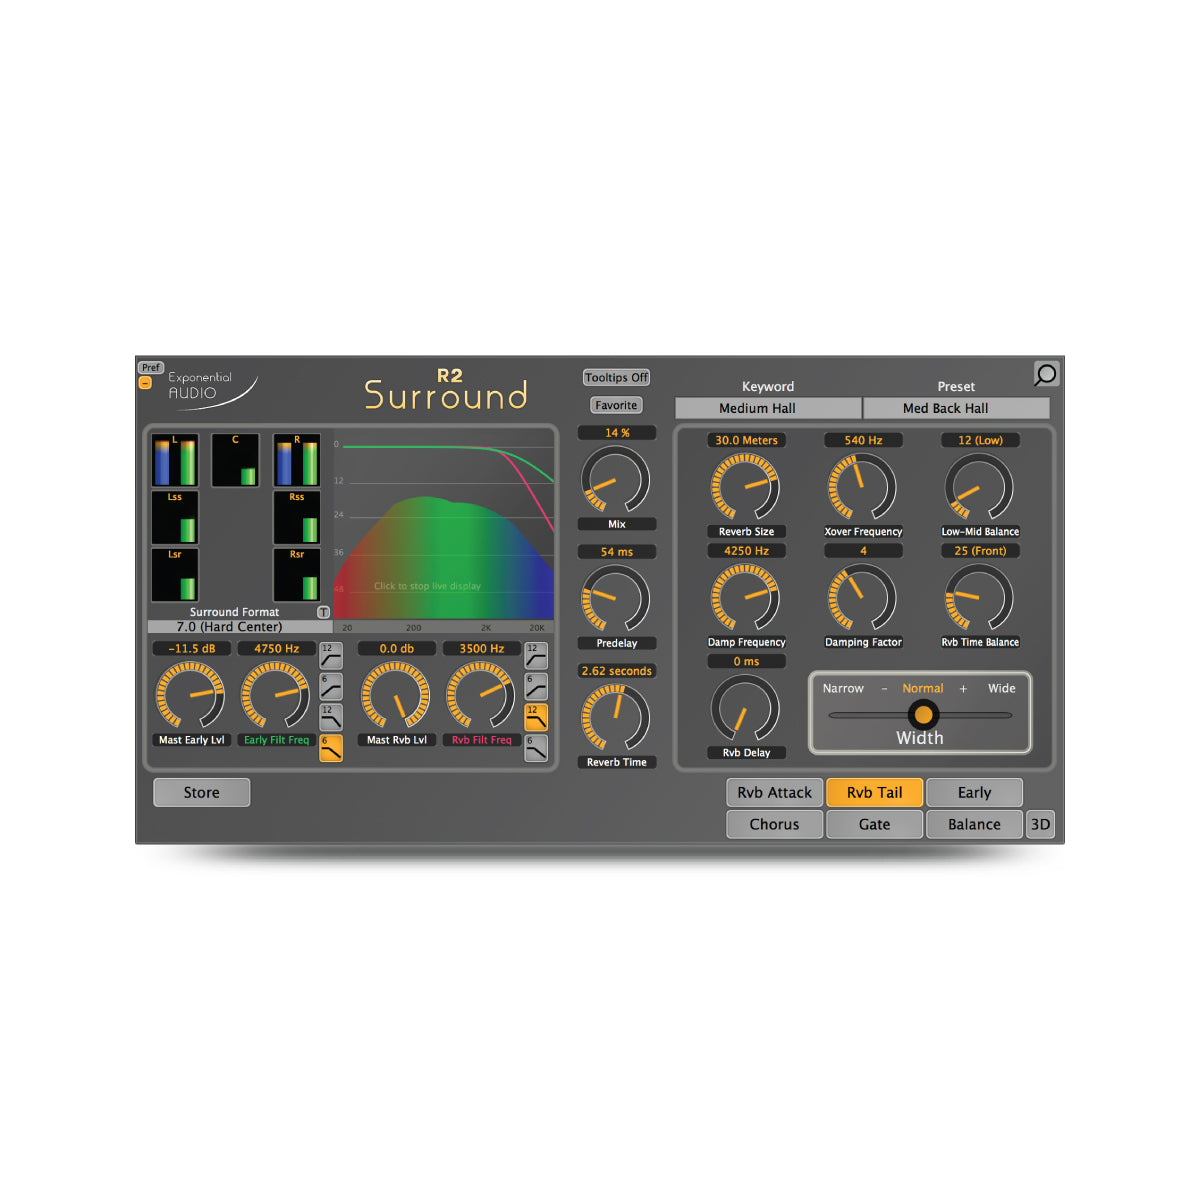 auro 3d sound software free download